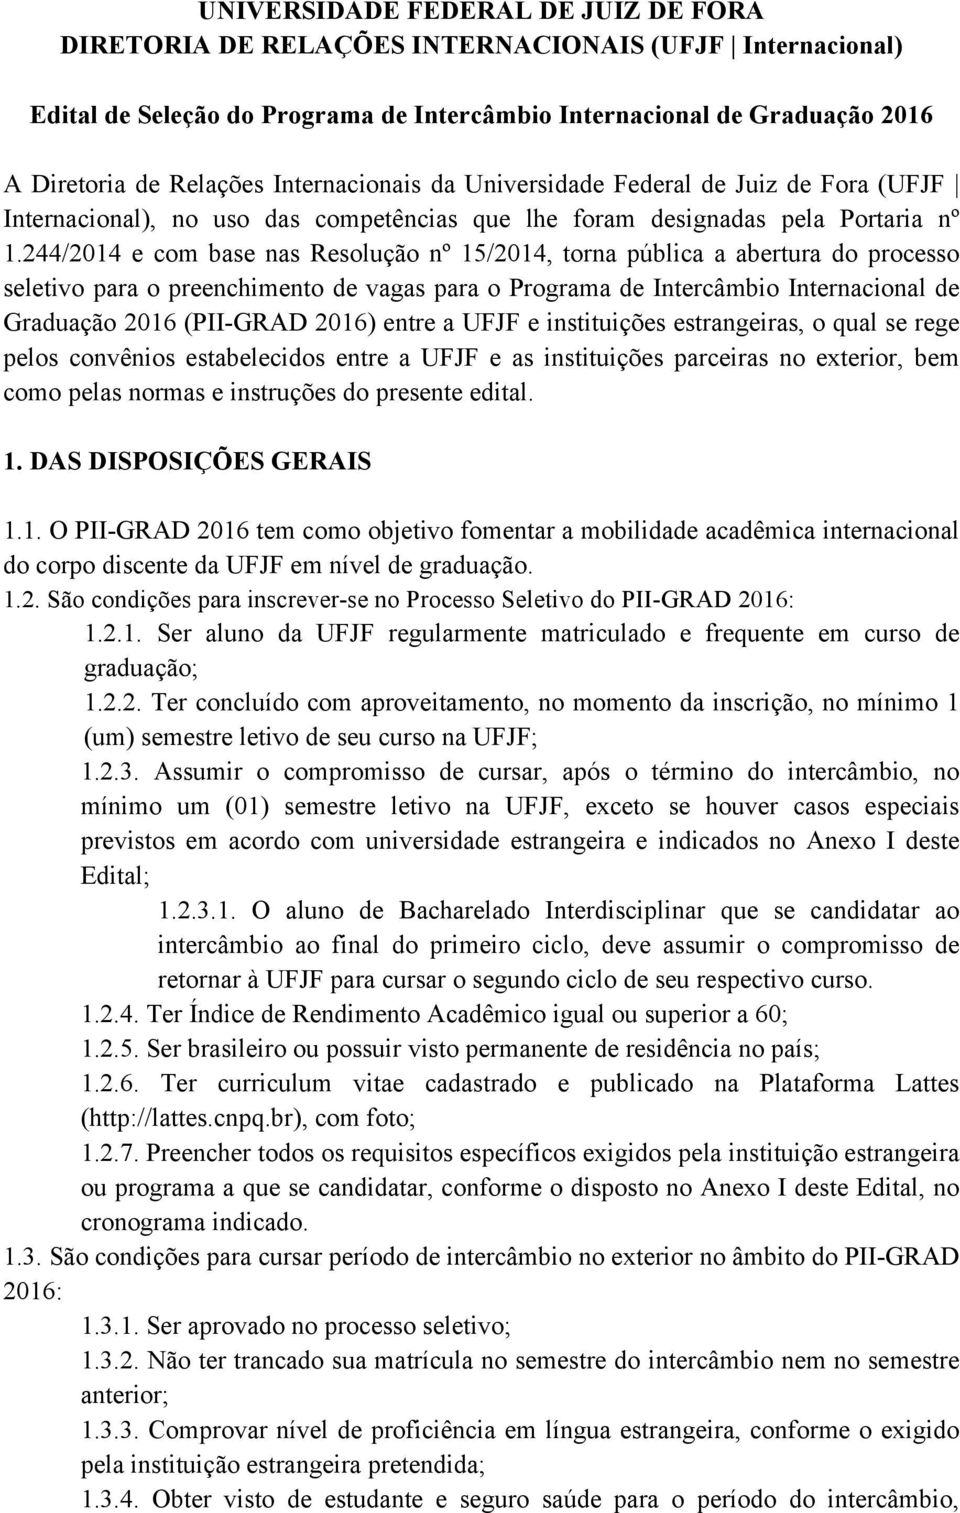 244/2014 e com base nas Resolução nº 15/2014, torna pública a abertura do processo seletivo para o preenchimento de vagas para o Programa de Intercâmbio Internacional de Graduação 2016 (PII-GRAD